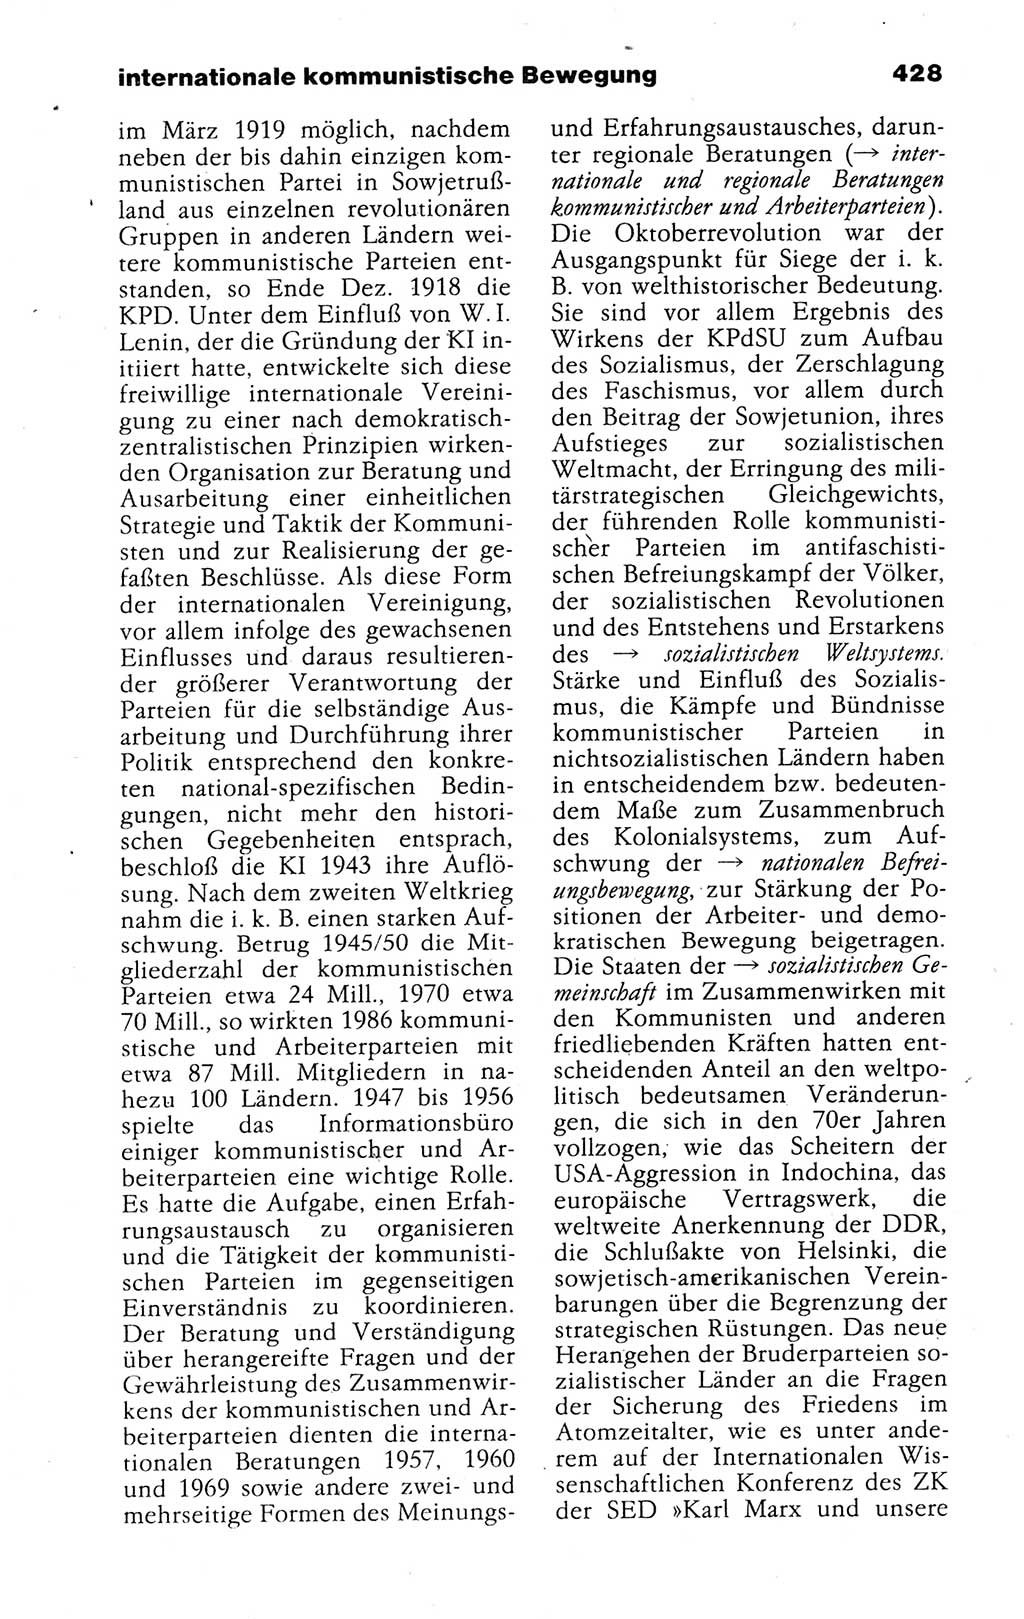 Kleines politisches Wörterbuch [Deutsche Demokratische Republik (DDR)] 1988, Seite 428 (Kl. pol. Wb. DDR 1988, S. 428)